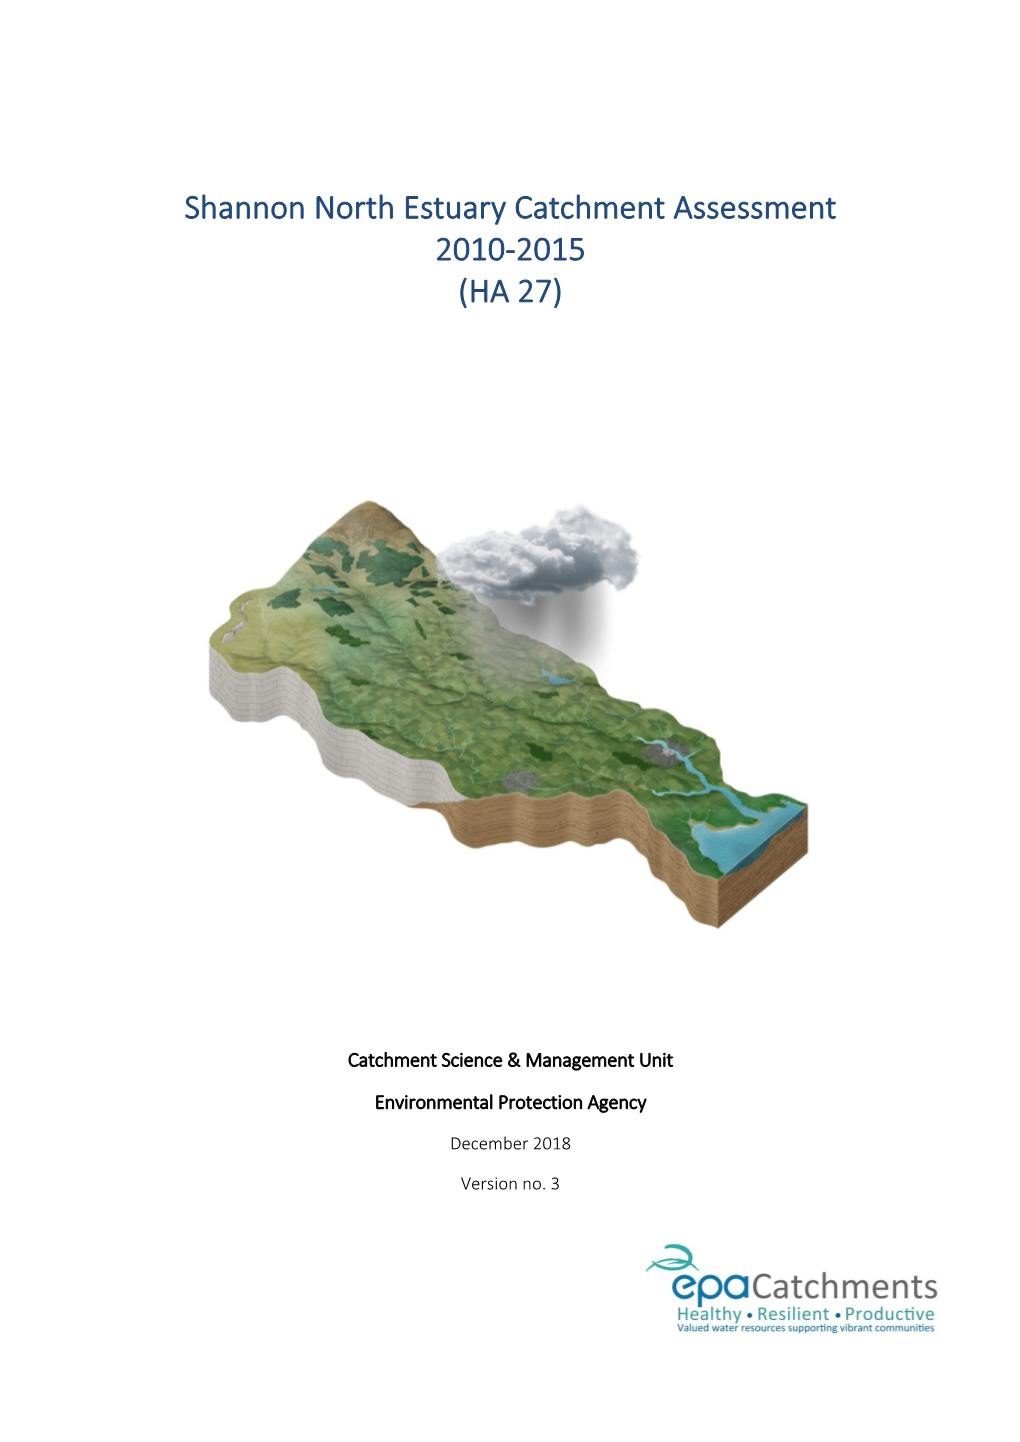 Shannon North Estuary Catchment Assessment 2010-2015 (HA 27)